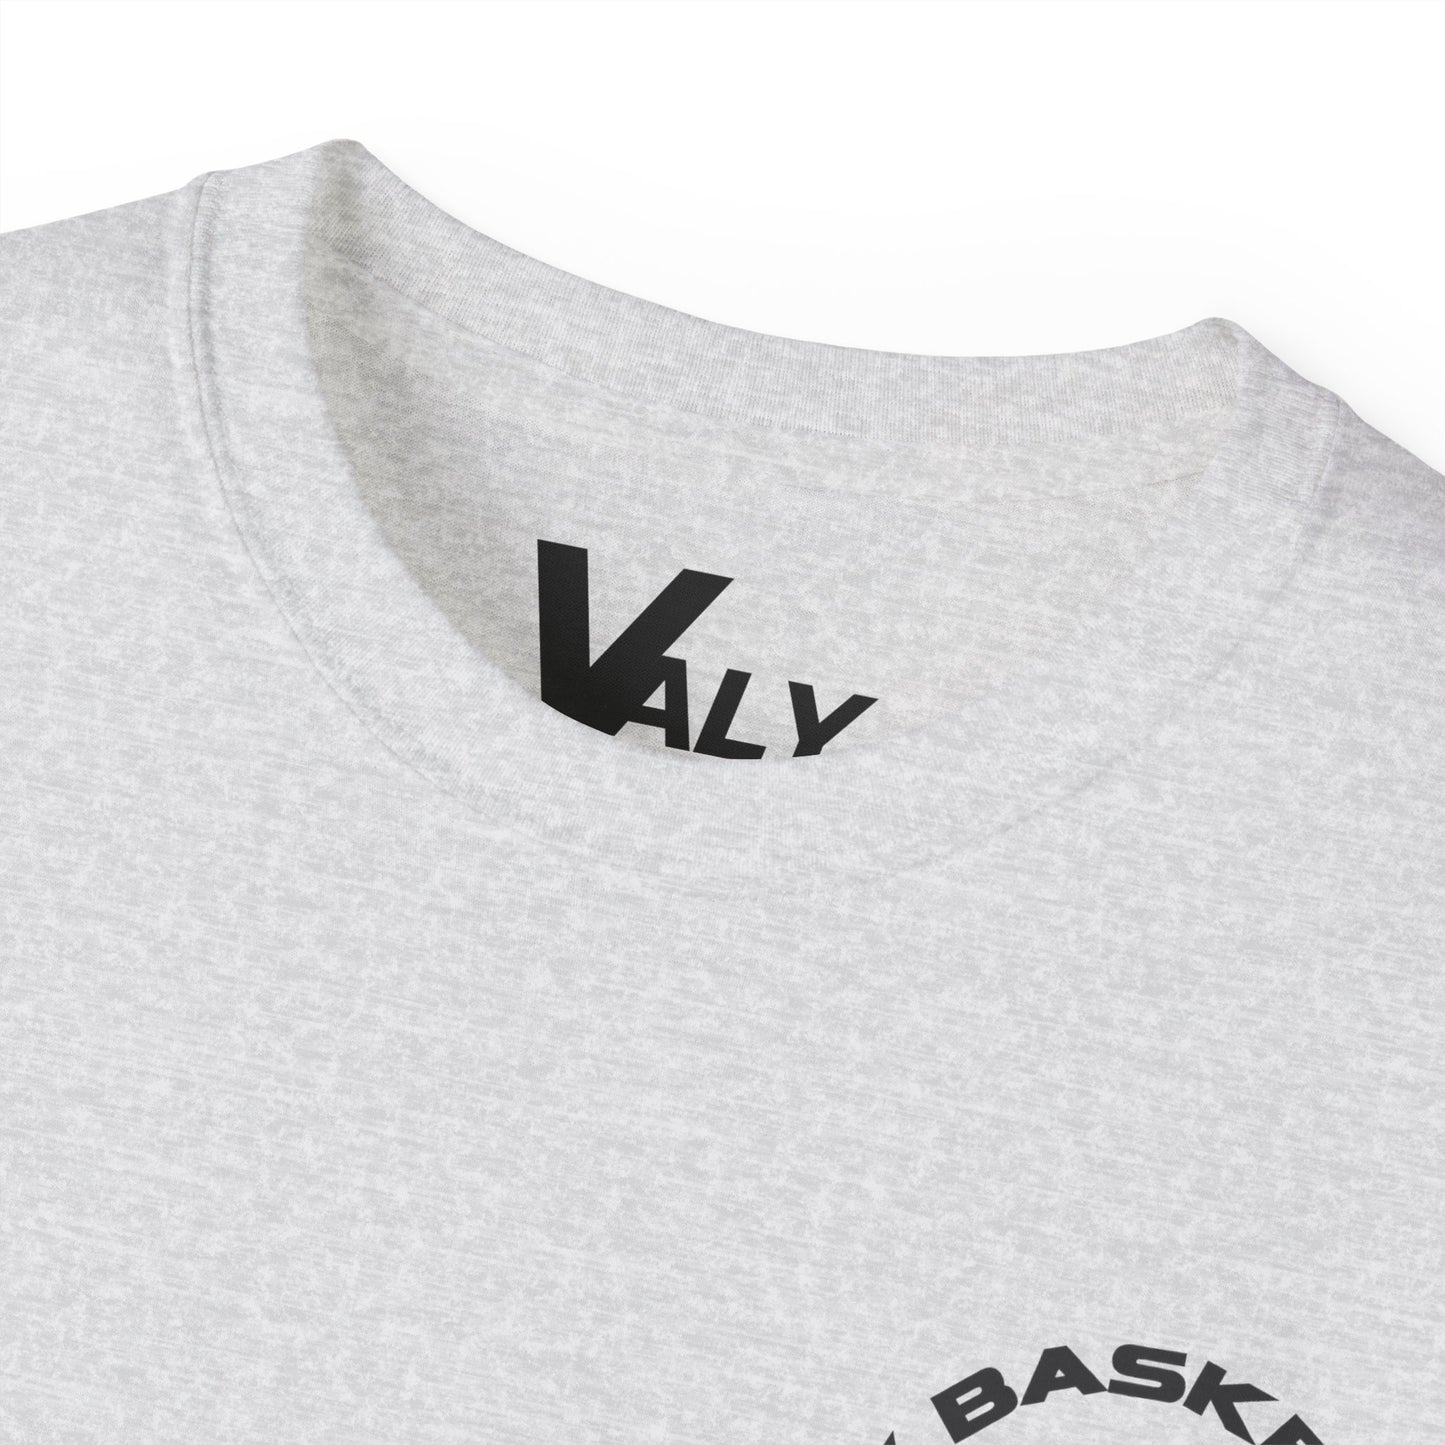 VALY Baller Series - ASH